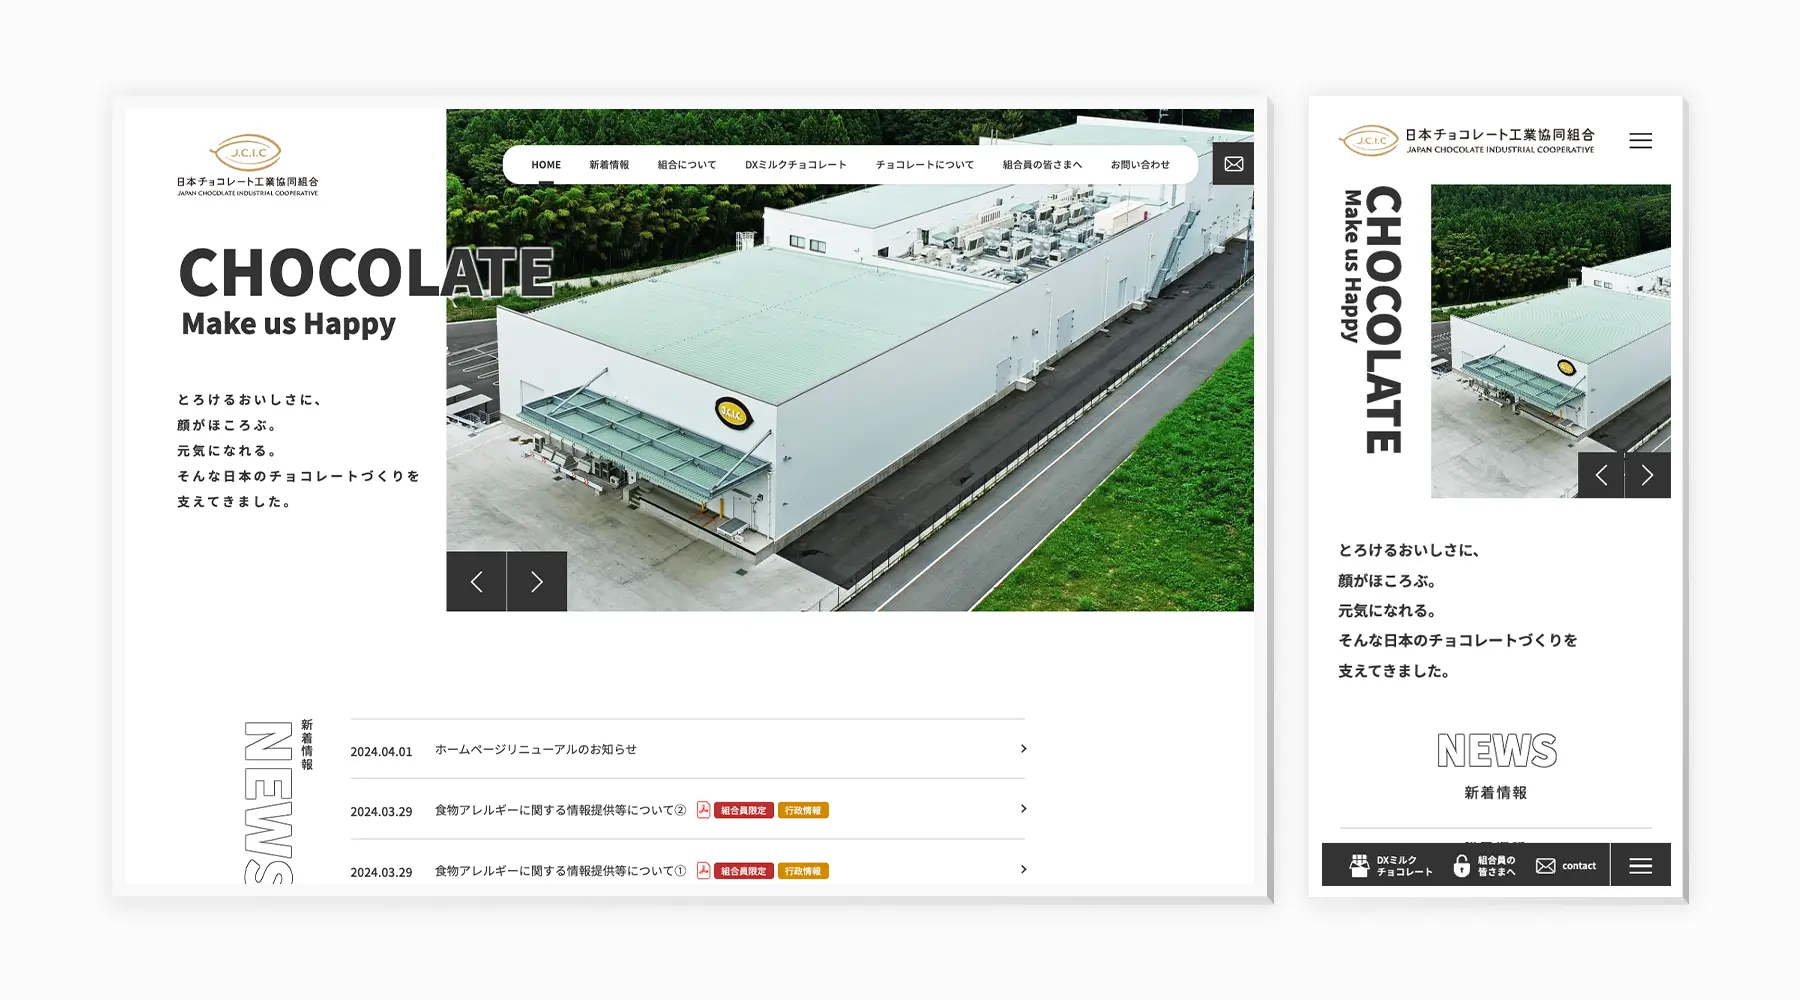 日本チョコレート工業協同組合様サイトのリニューアルを担当させて頂きました。